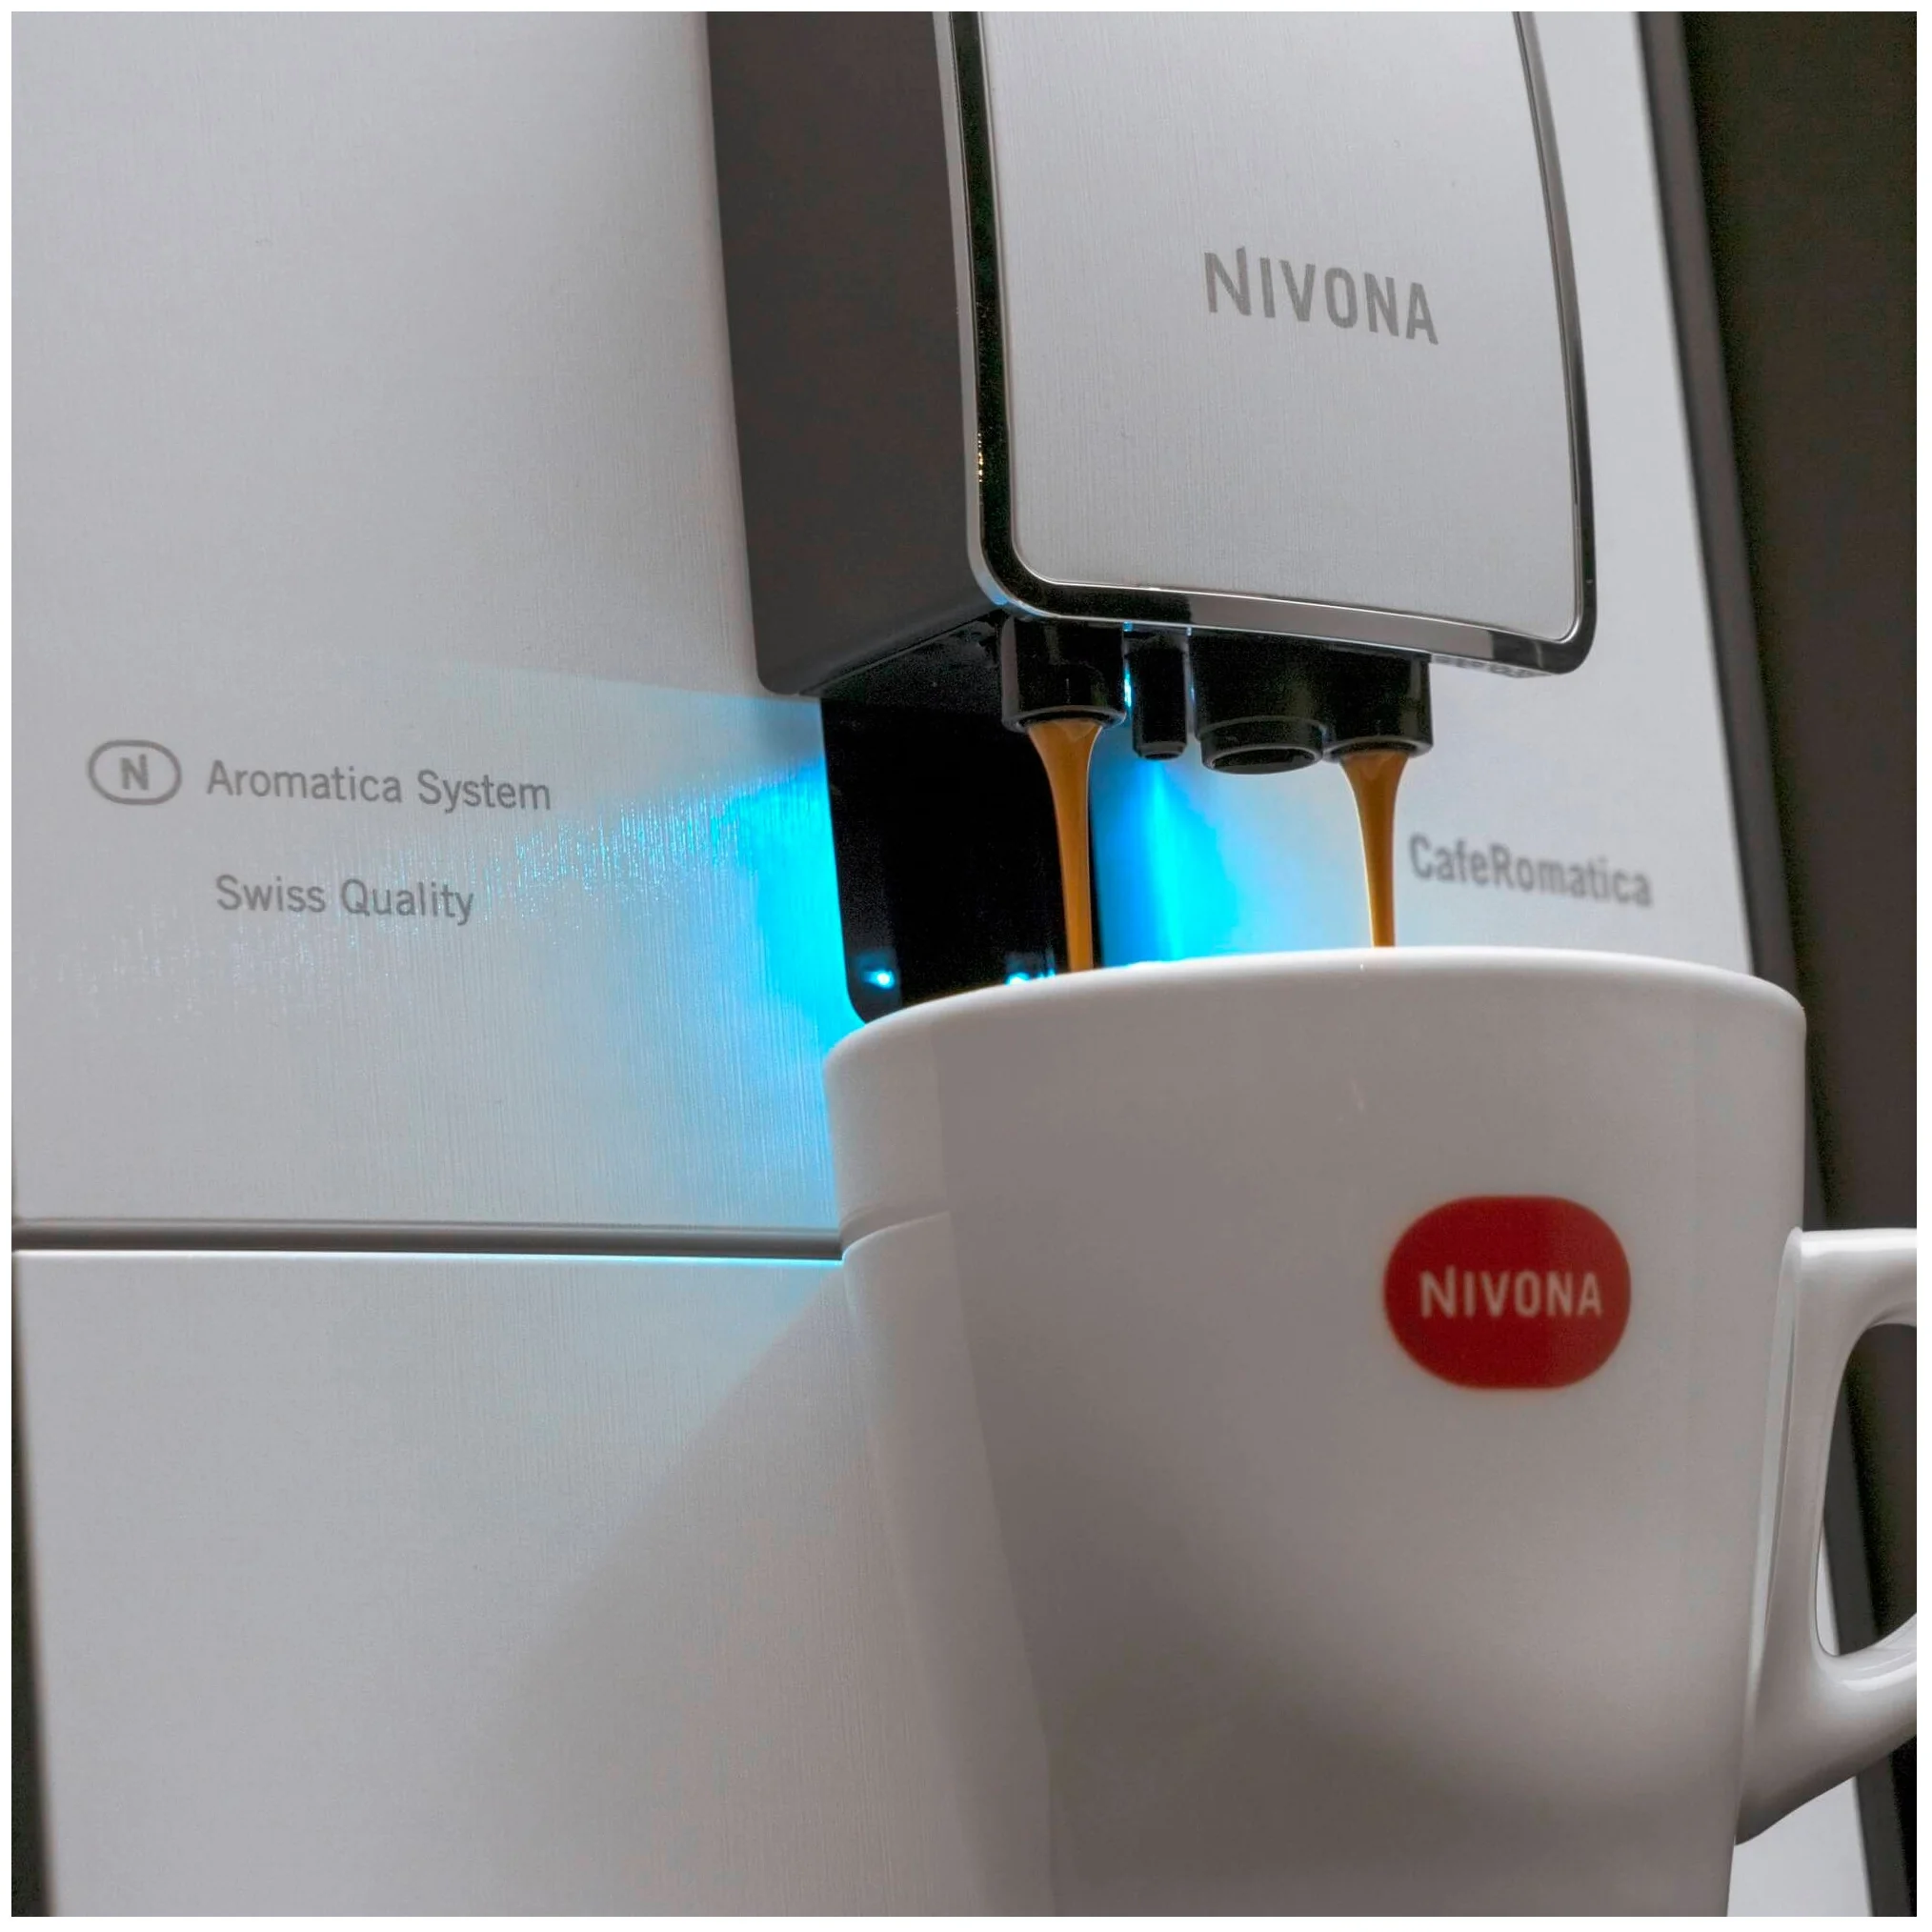 Nivona CafeRomatica 779 - доп. функции: автоотключение при неиспользовании, подогрев чашек, подача горячей воды